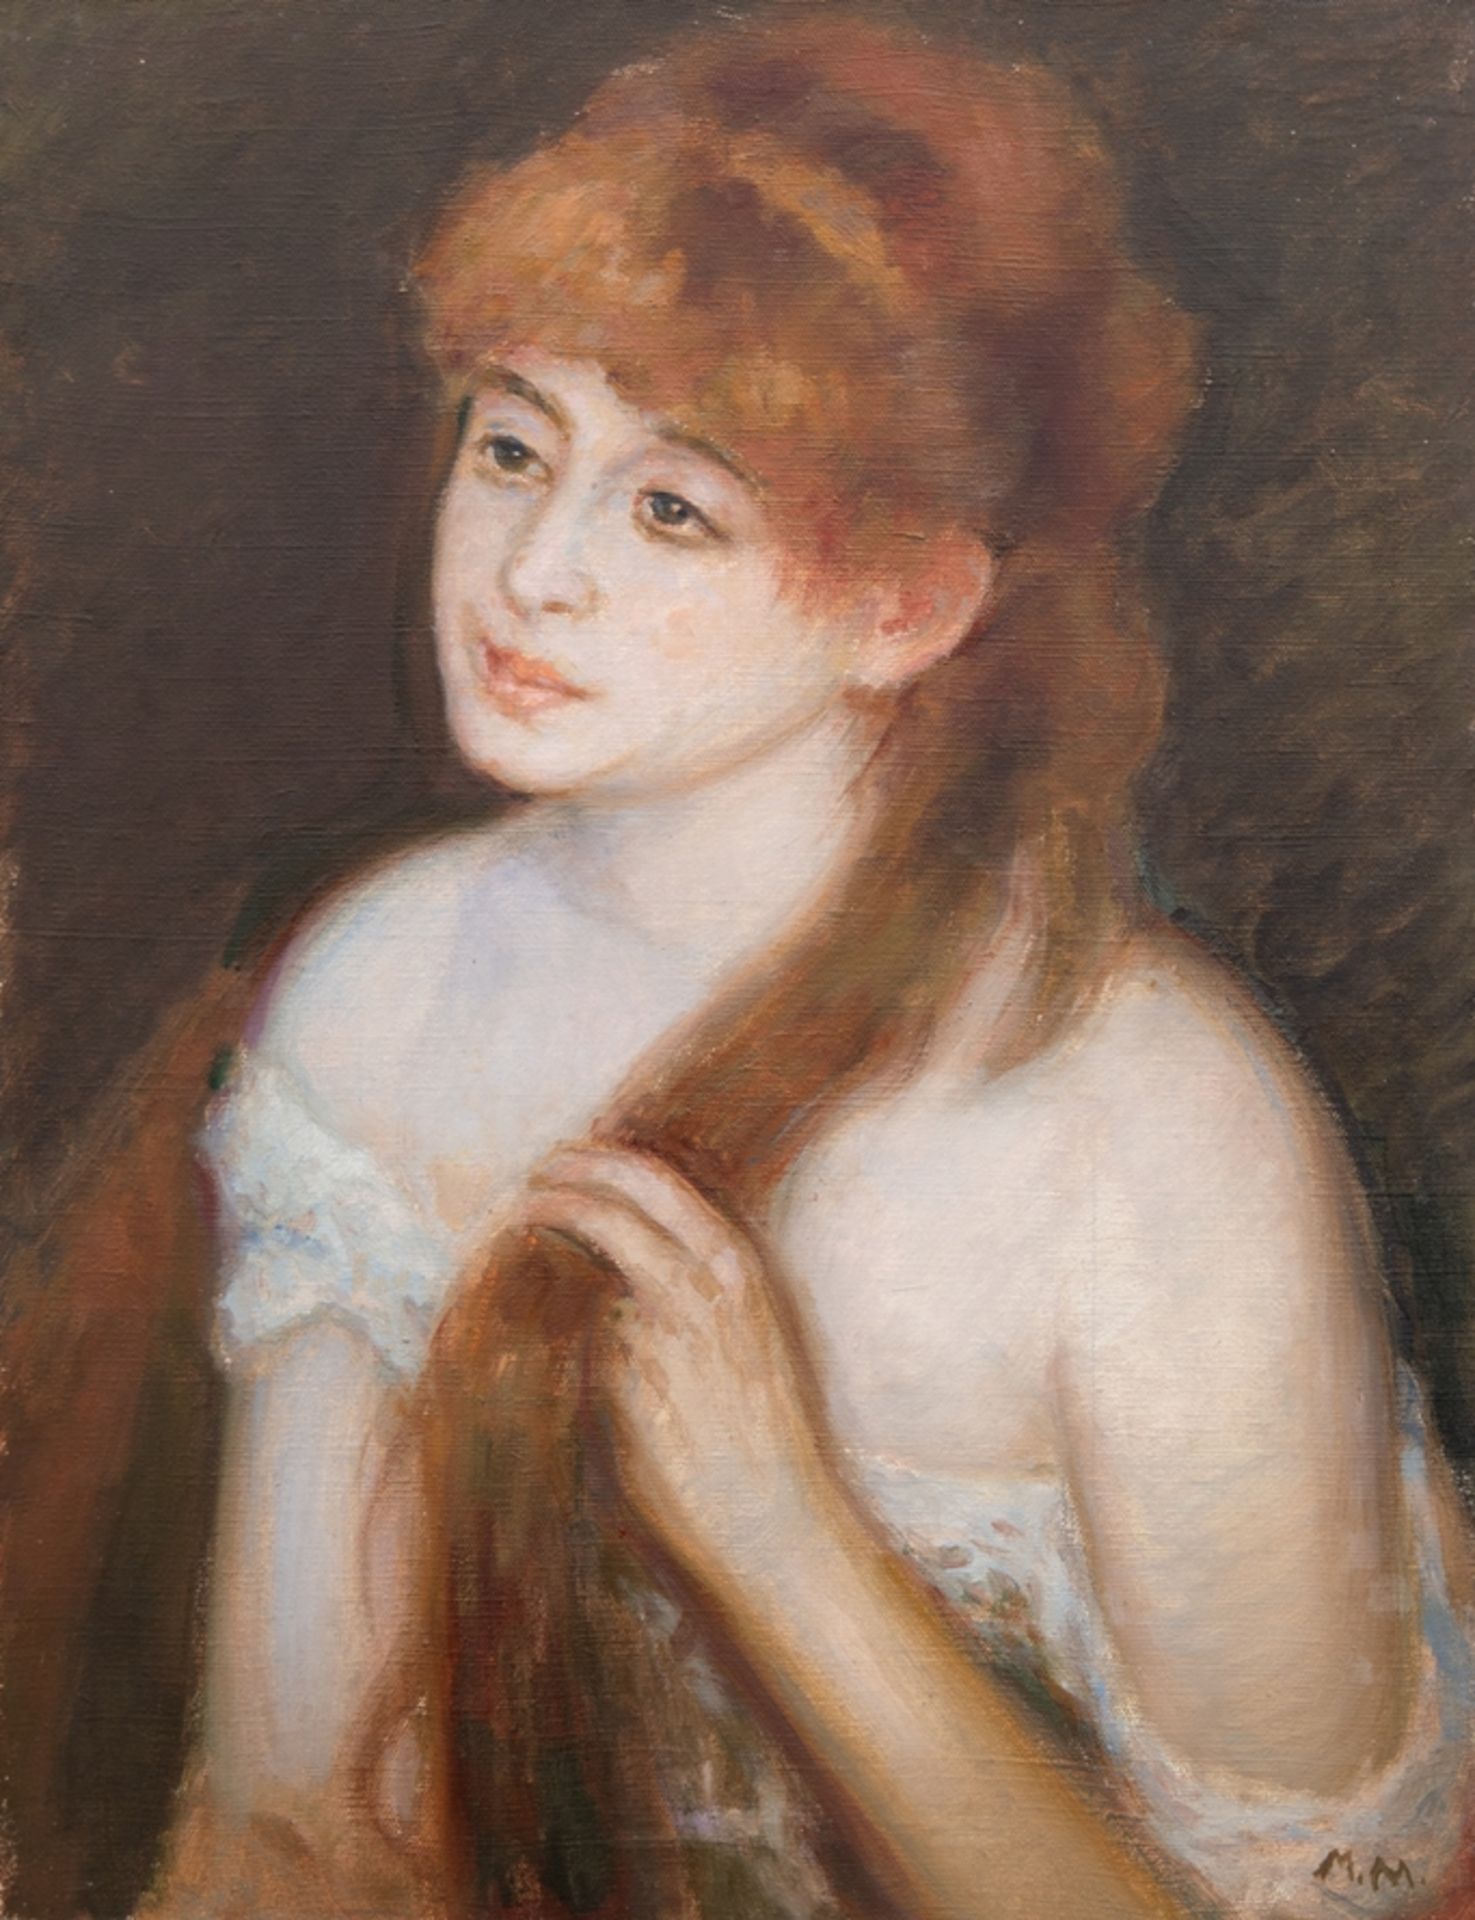 Molowiecki, Maxim (Ukrainischer Künstler) "Halbporträt einer jungen Frau mit rotem Haar", Öl/ Lw., 